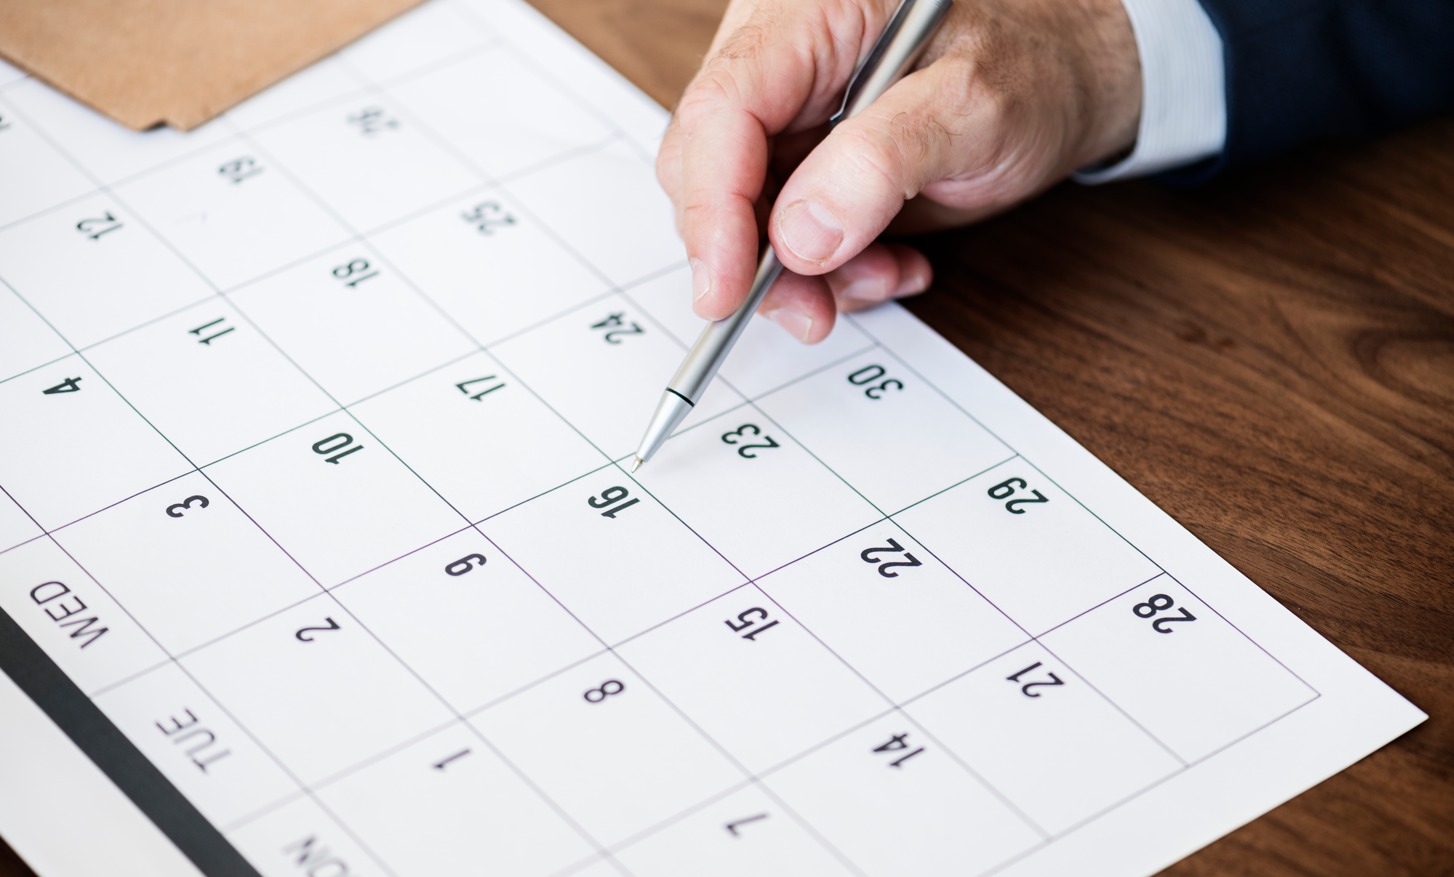 Fábrica lança calendário criativo com dicas para incrementar o planejamento das atividades na empresa